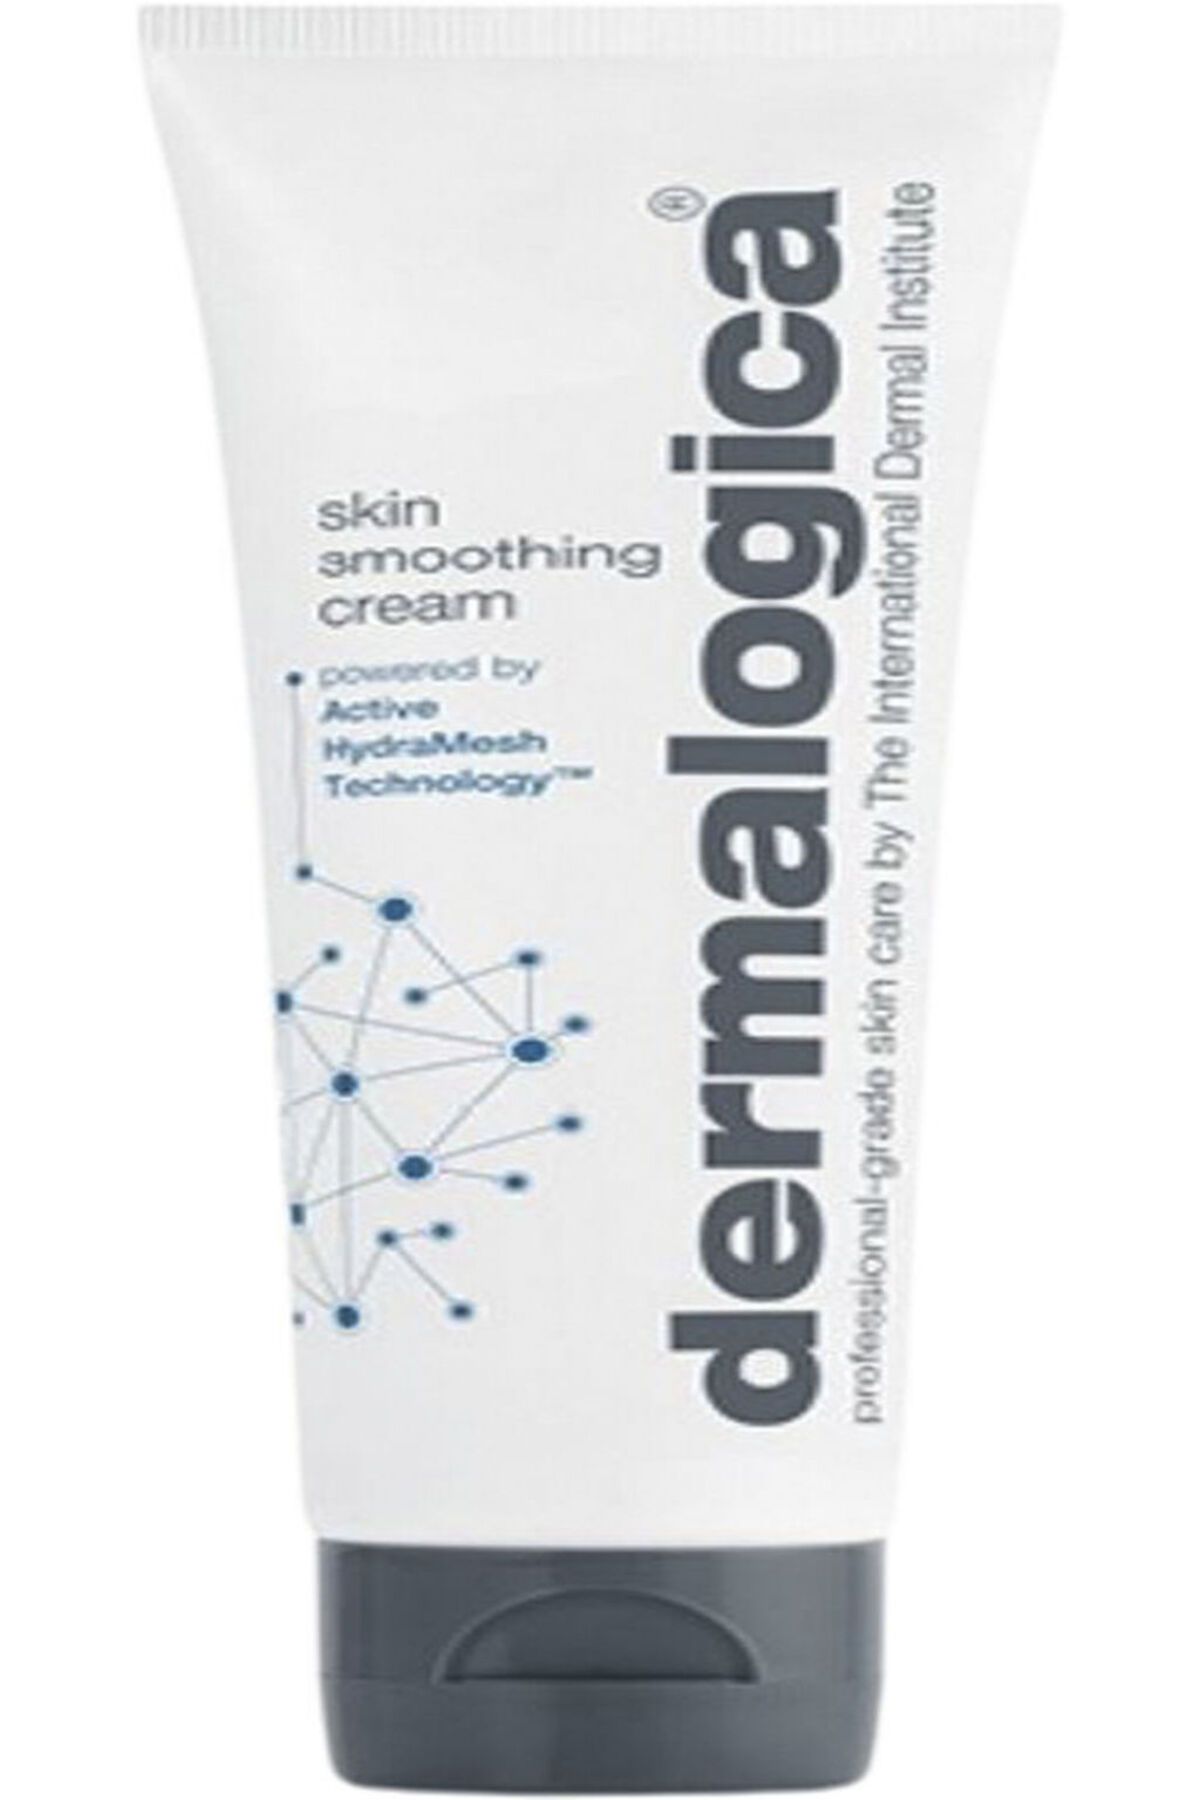 Dermalogica Skin Smoothing Cream Kuru Ciltler İçin Orta Ağırlıkta Nemlendirici Krem 50 ml